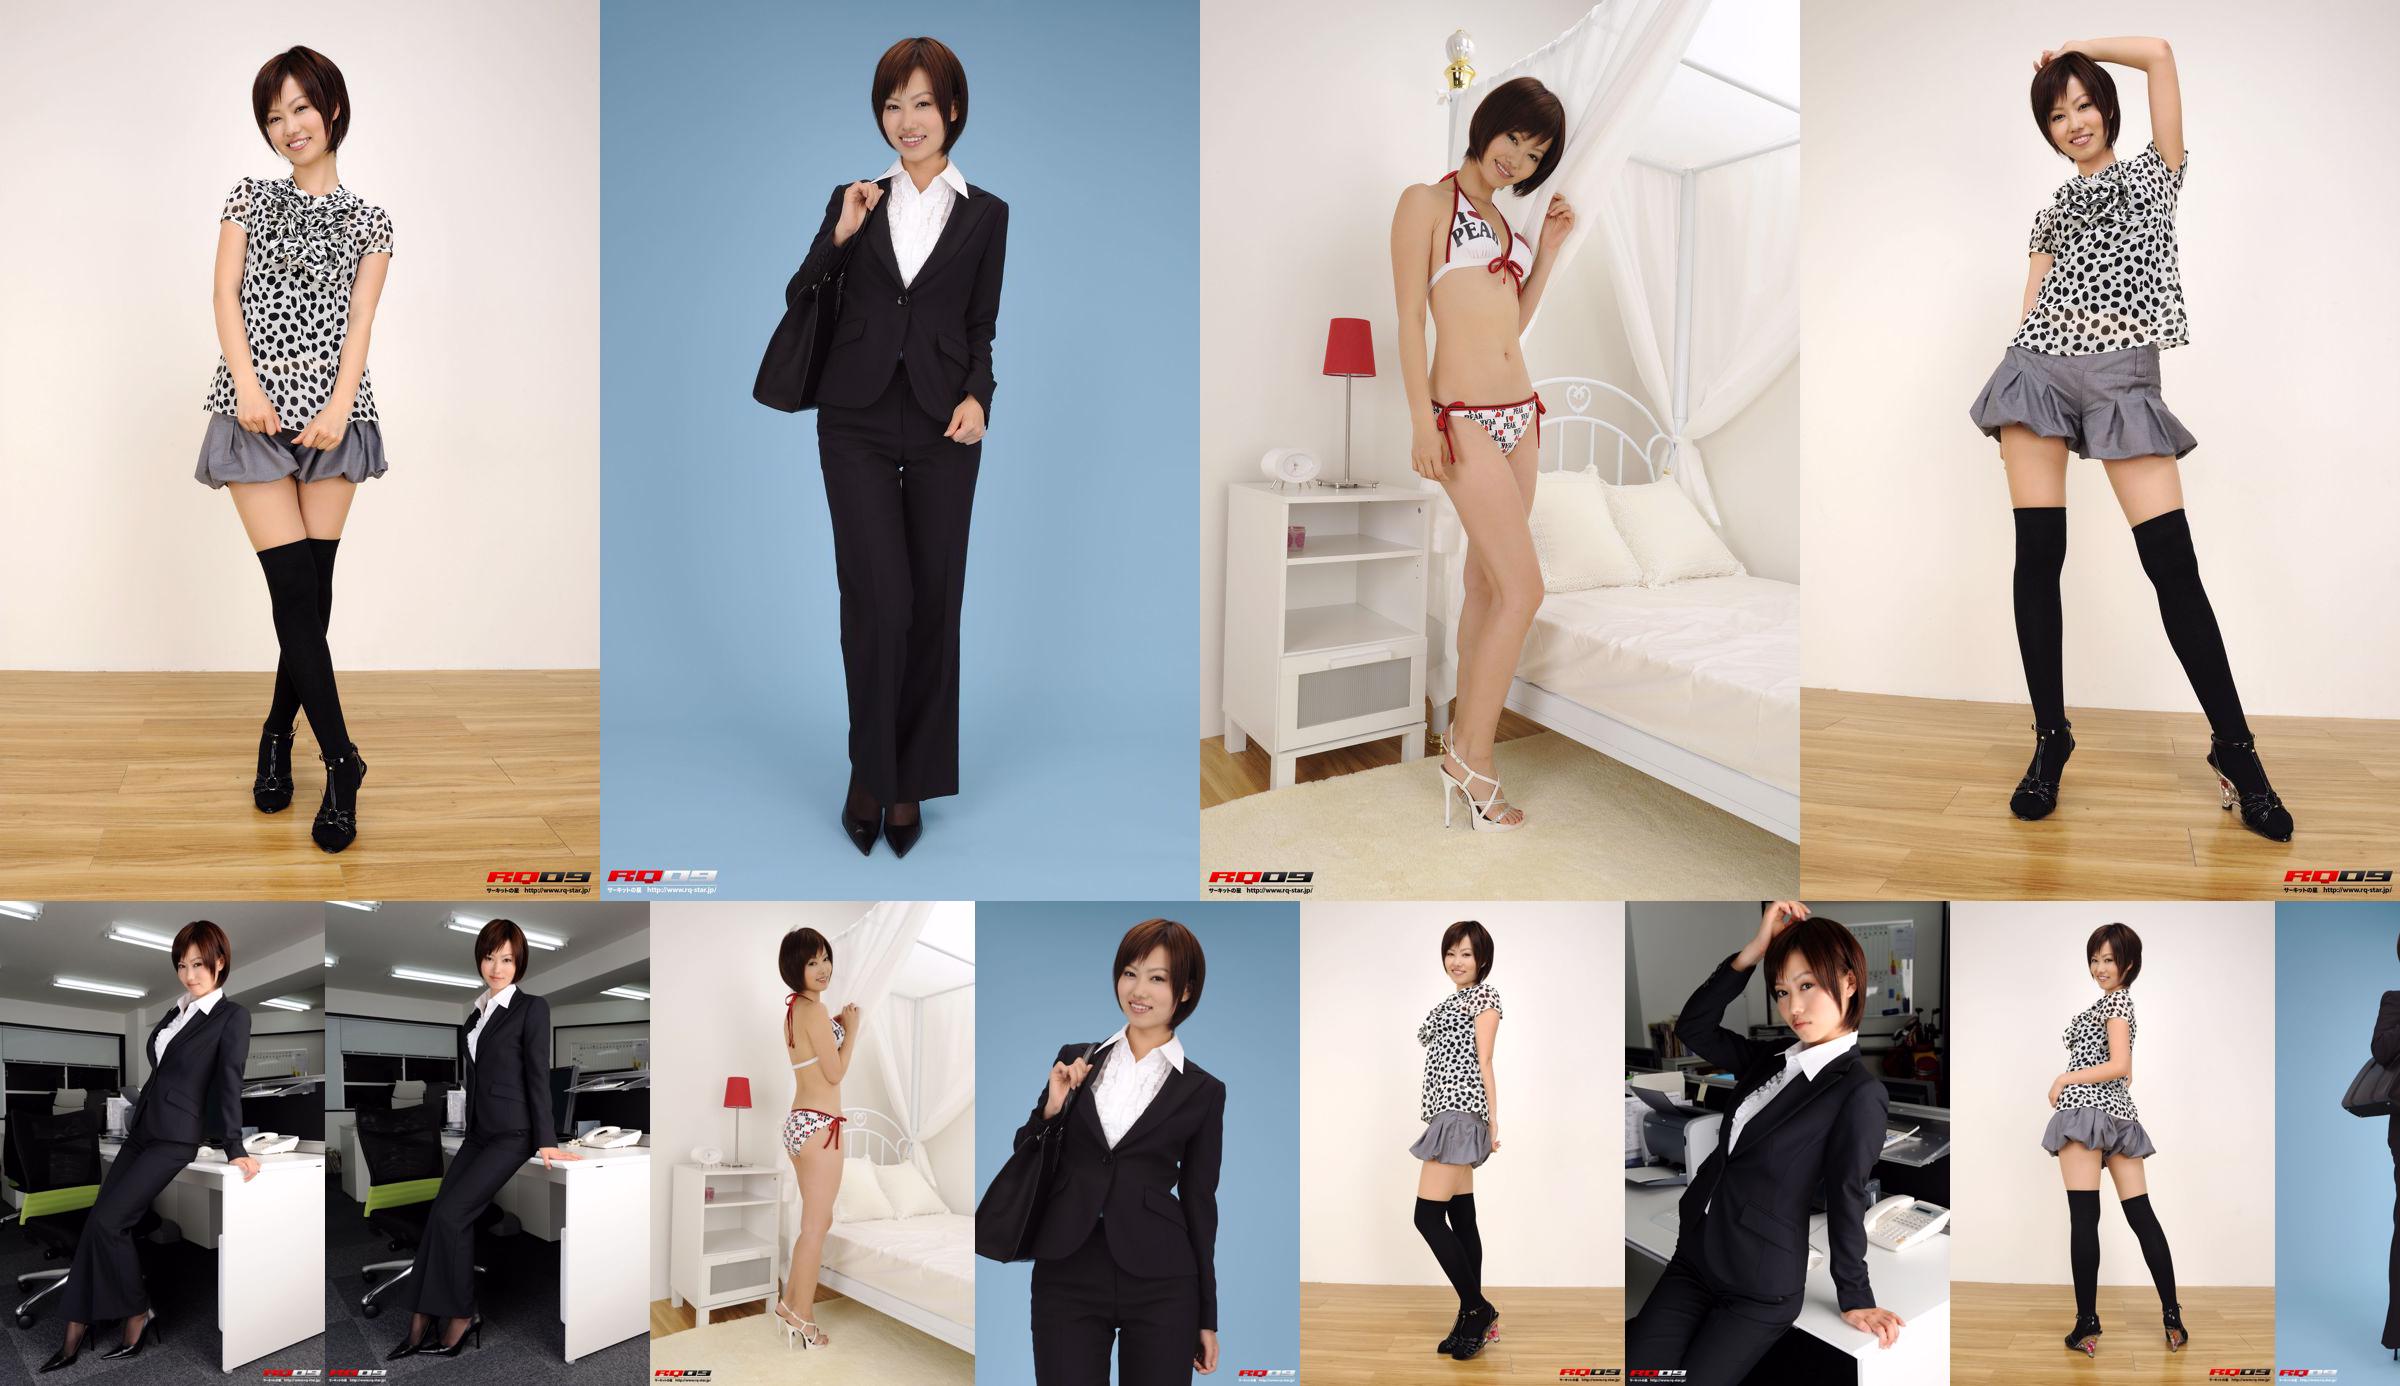 [RQ-STAR] NO.00155 Fujimura Misato / Fujimura Edison Recruit Style Office Beauty-Serie No.772c35 Seite 2